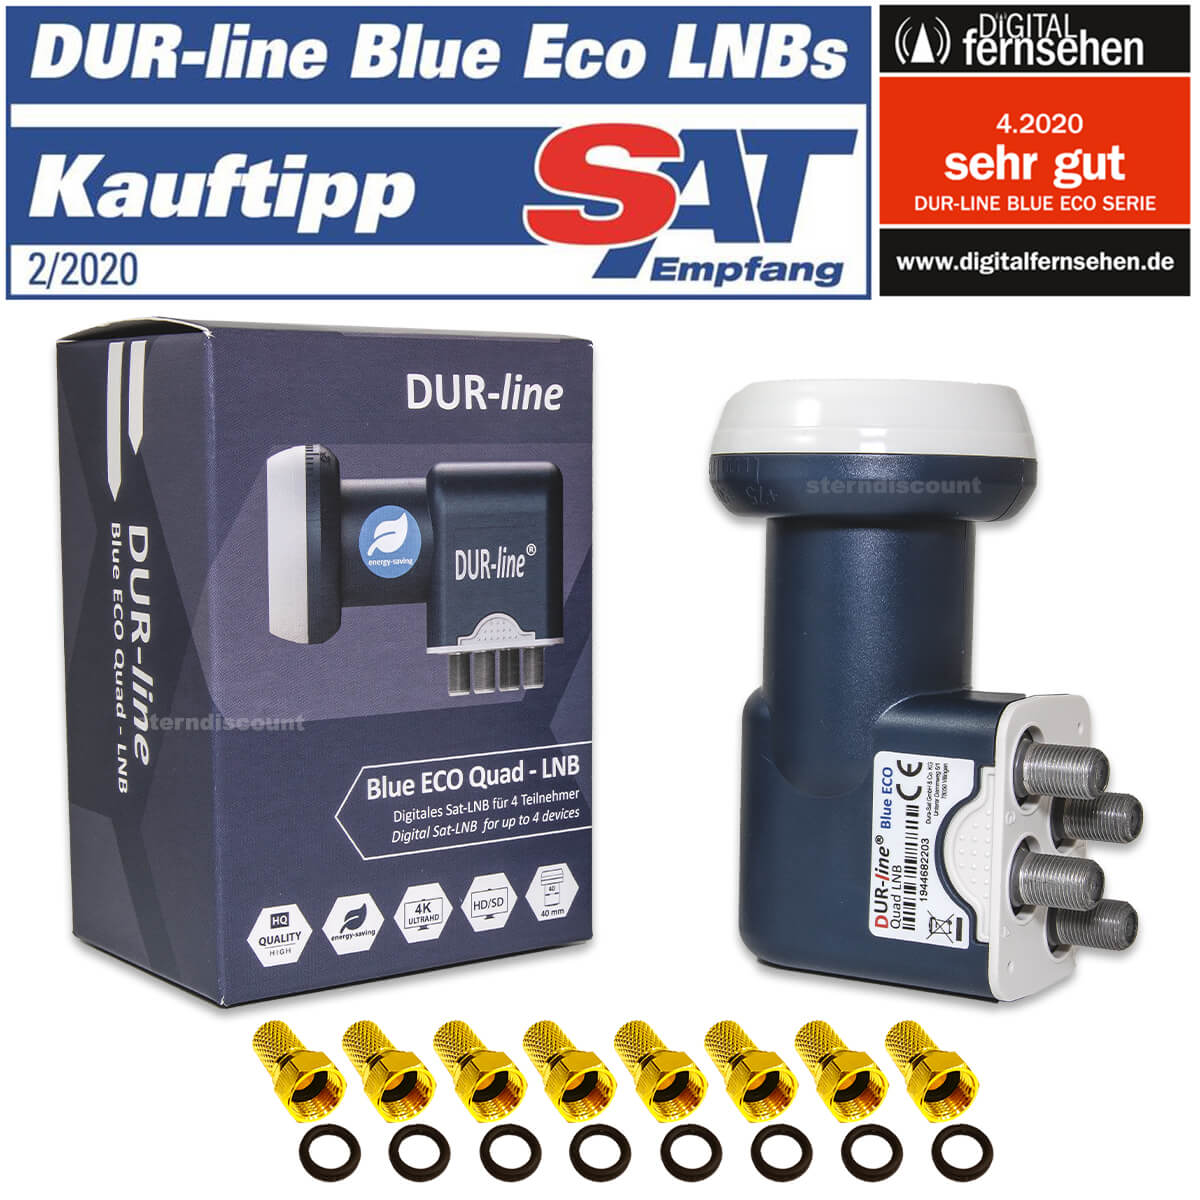 Dur-Line Blue ECO QUAD - 4-Fach LNB - TEST SEHR GUT - HQ Digital HD 4K